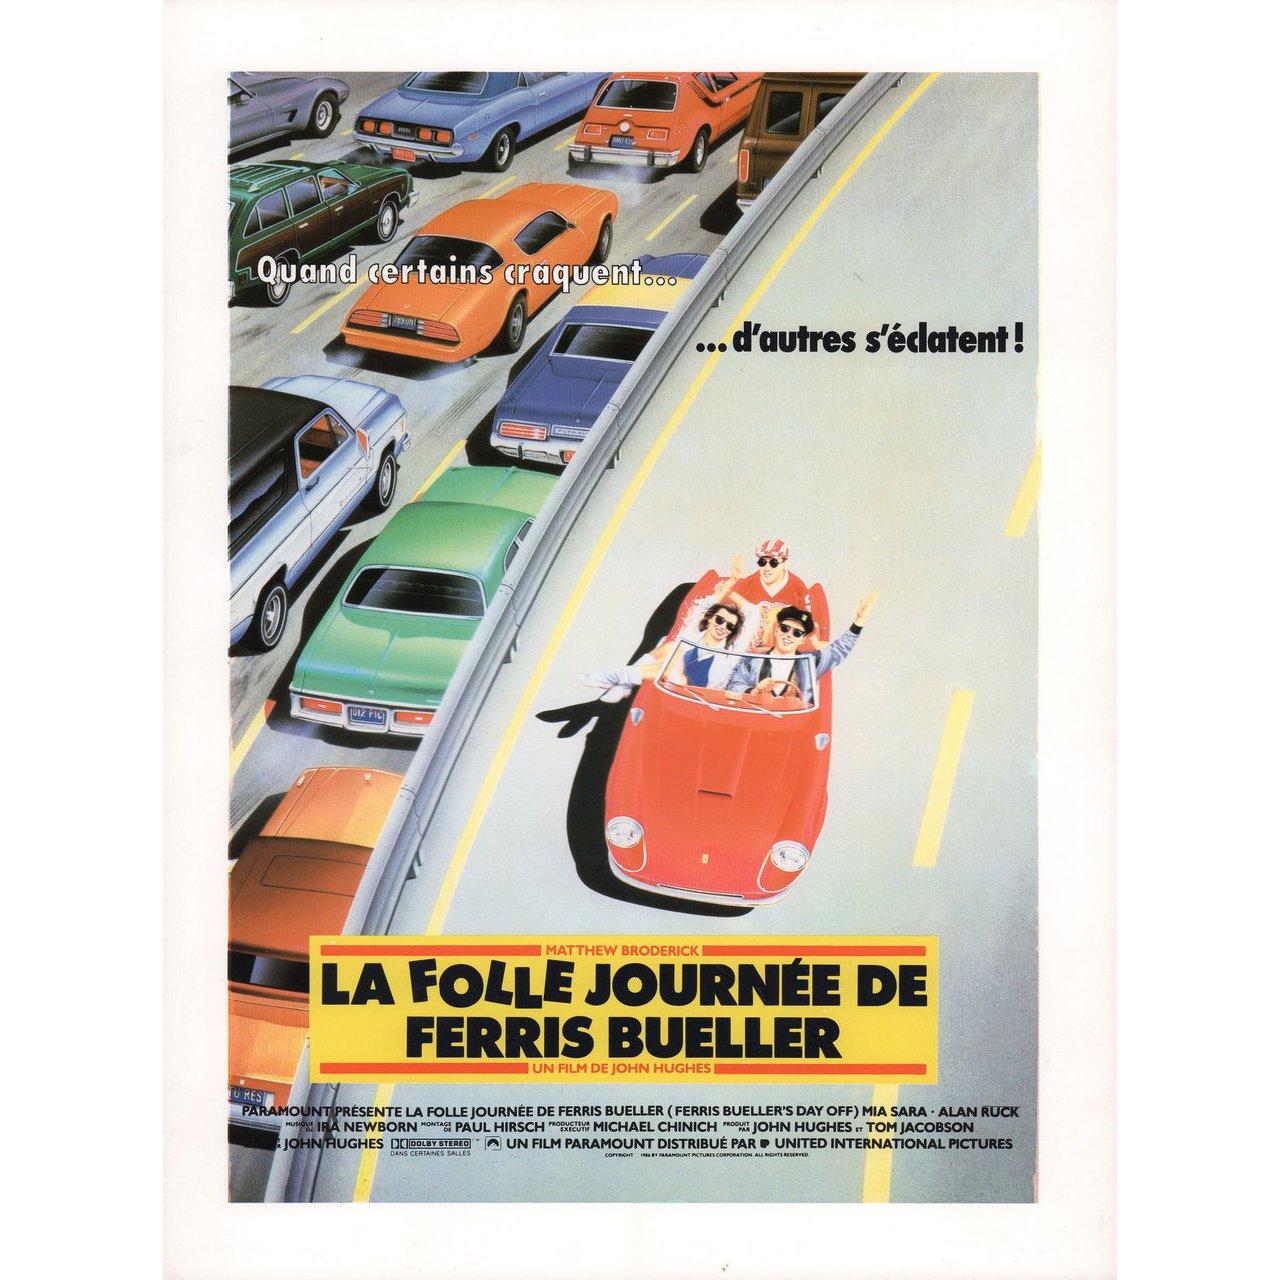 french ferris bueller poster